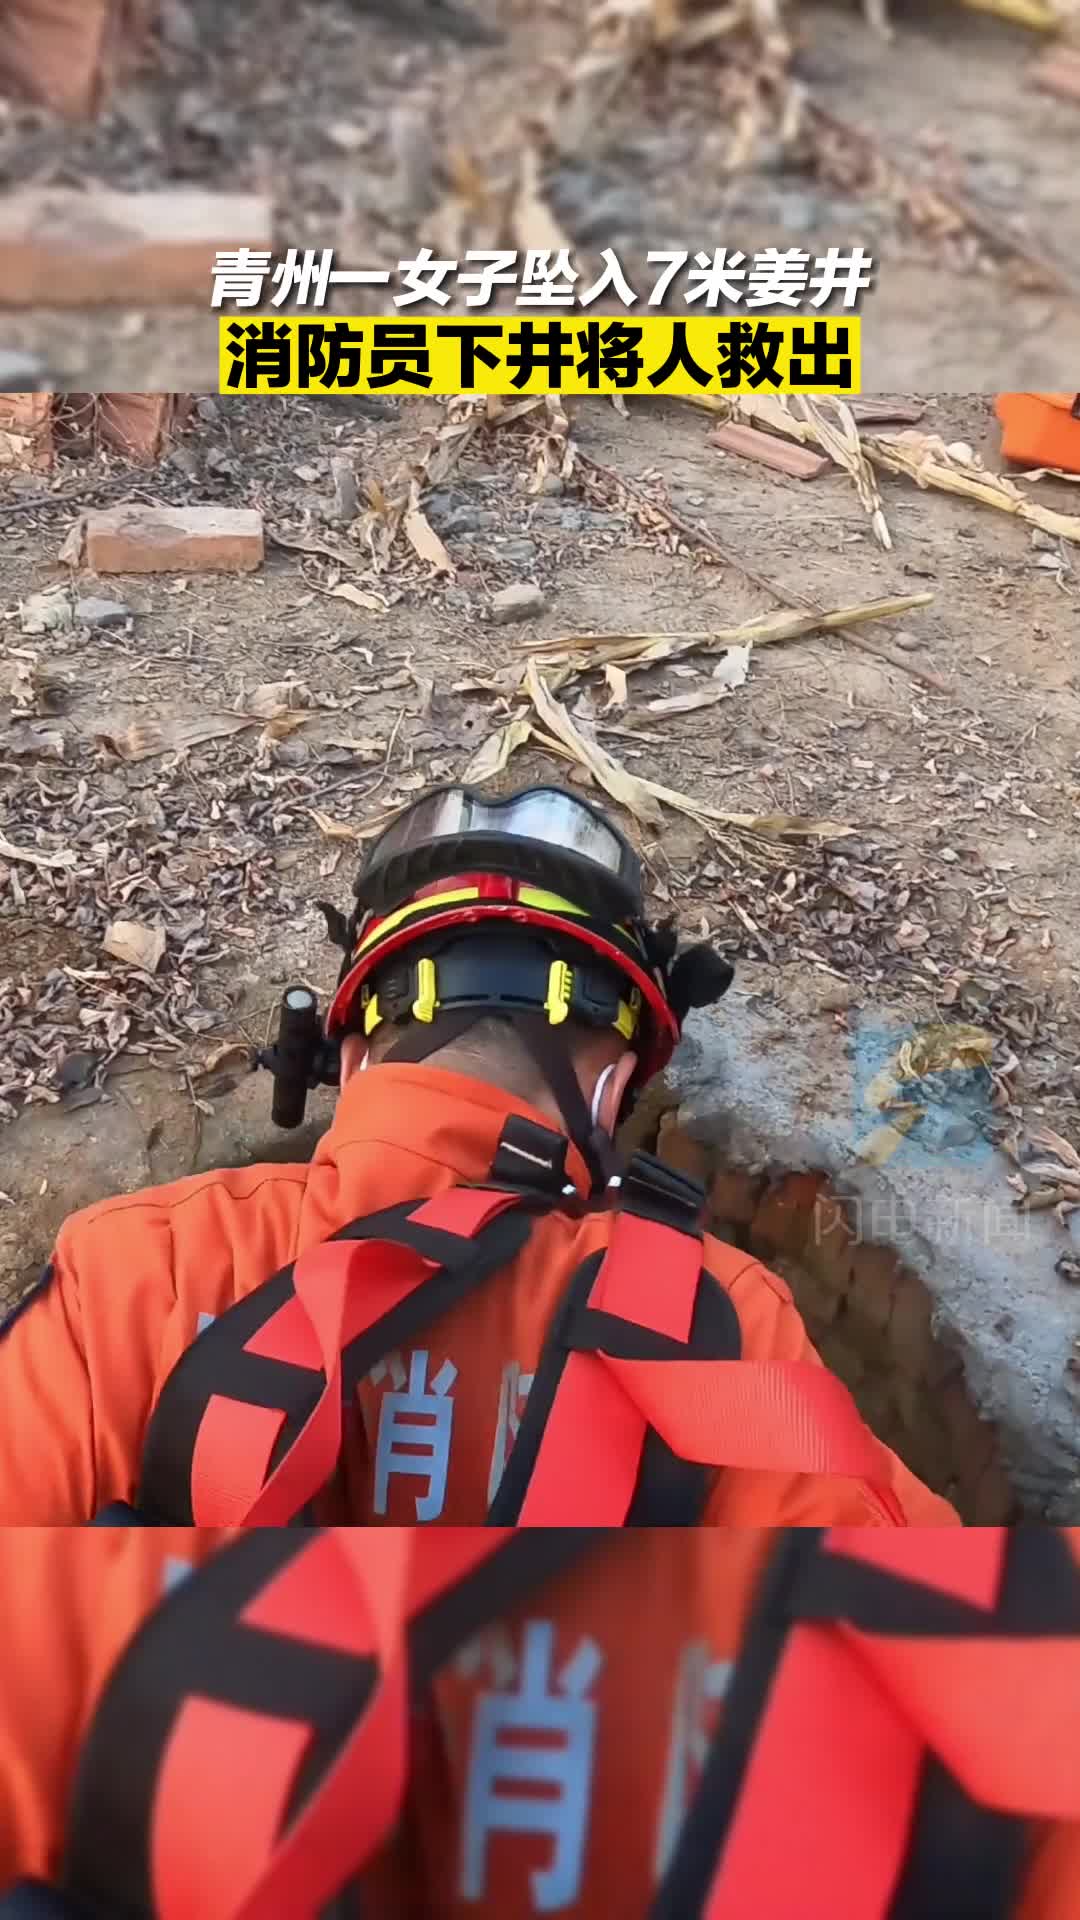 青州一女子坠入7米姜井 消防员下井将人救出